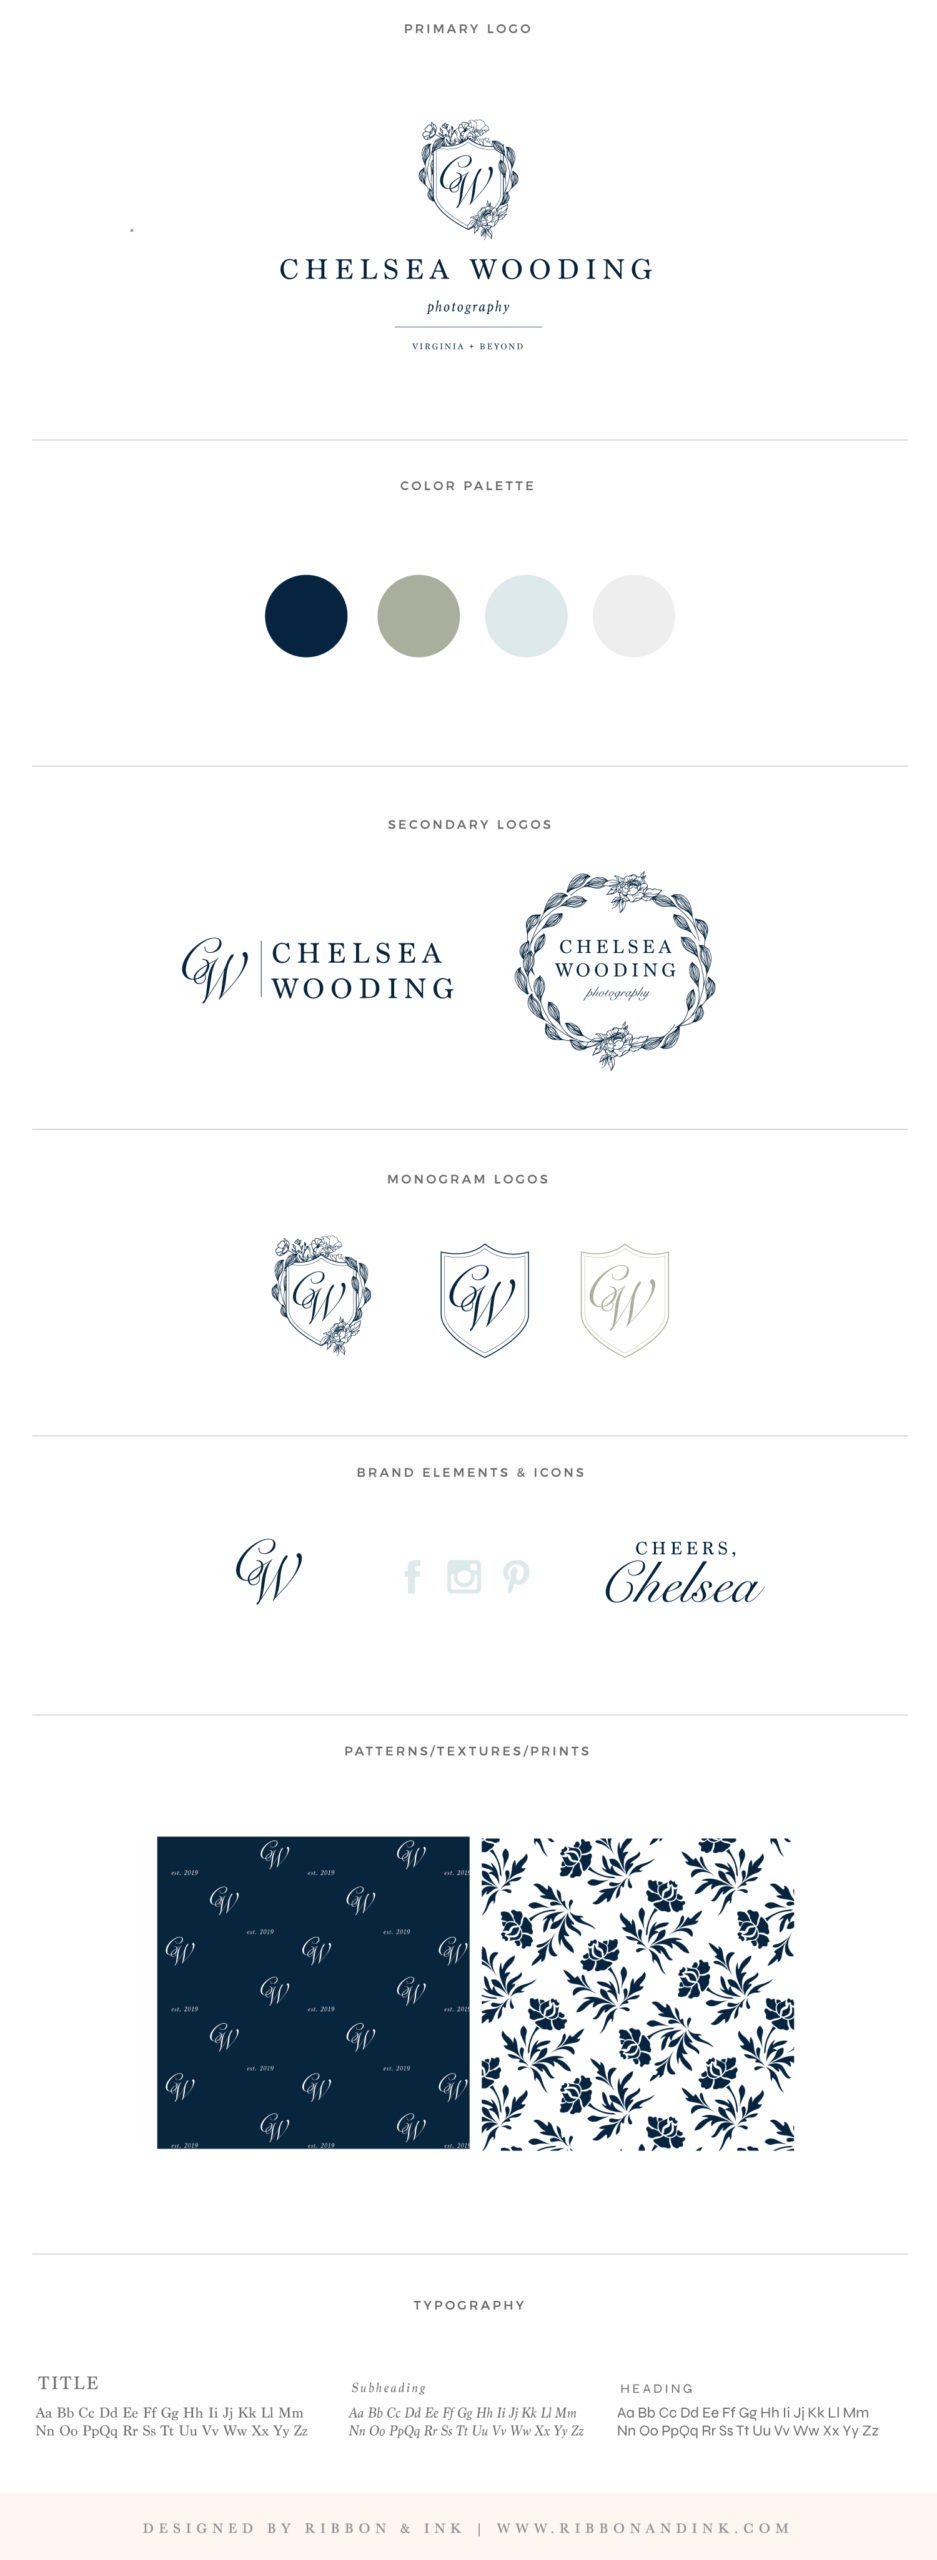 brand board / brand identity / wedding photographer branding / logo designer for women / navy / neutral / green